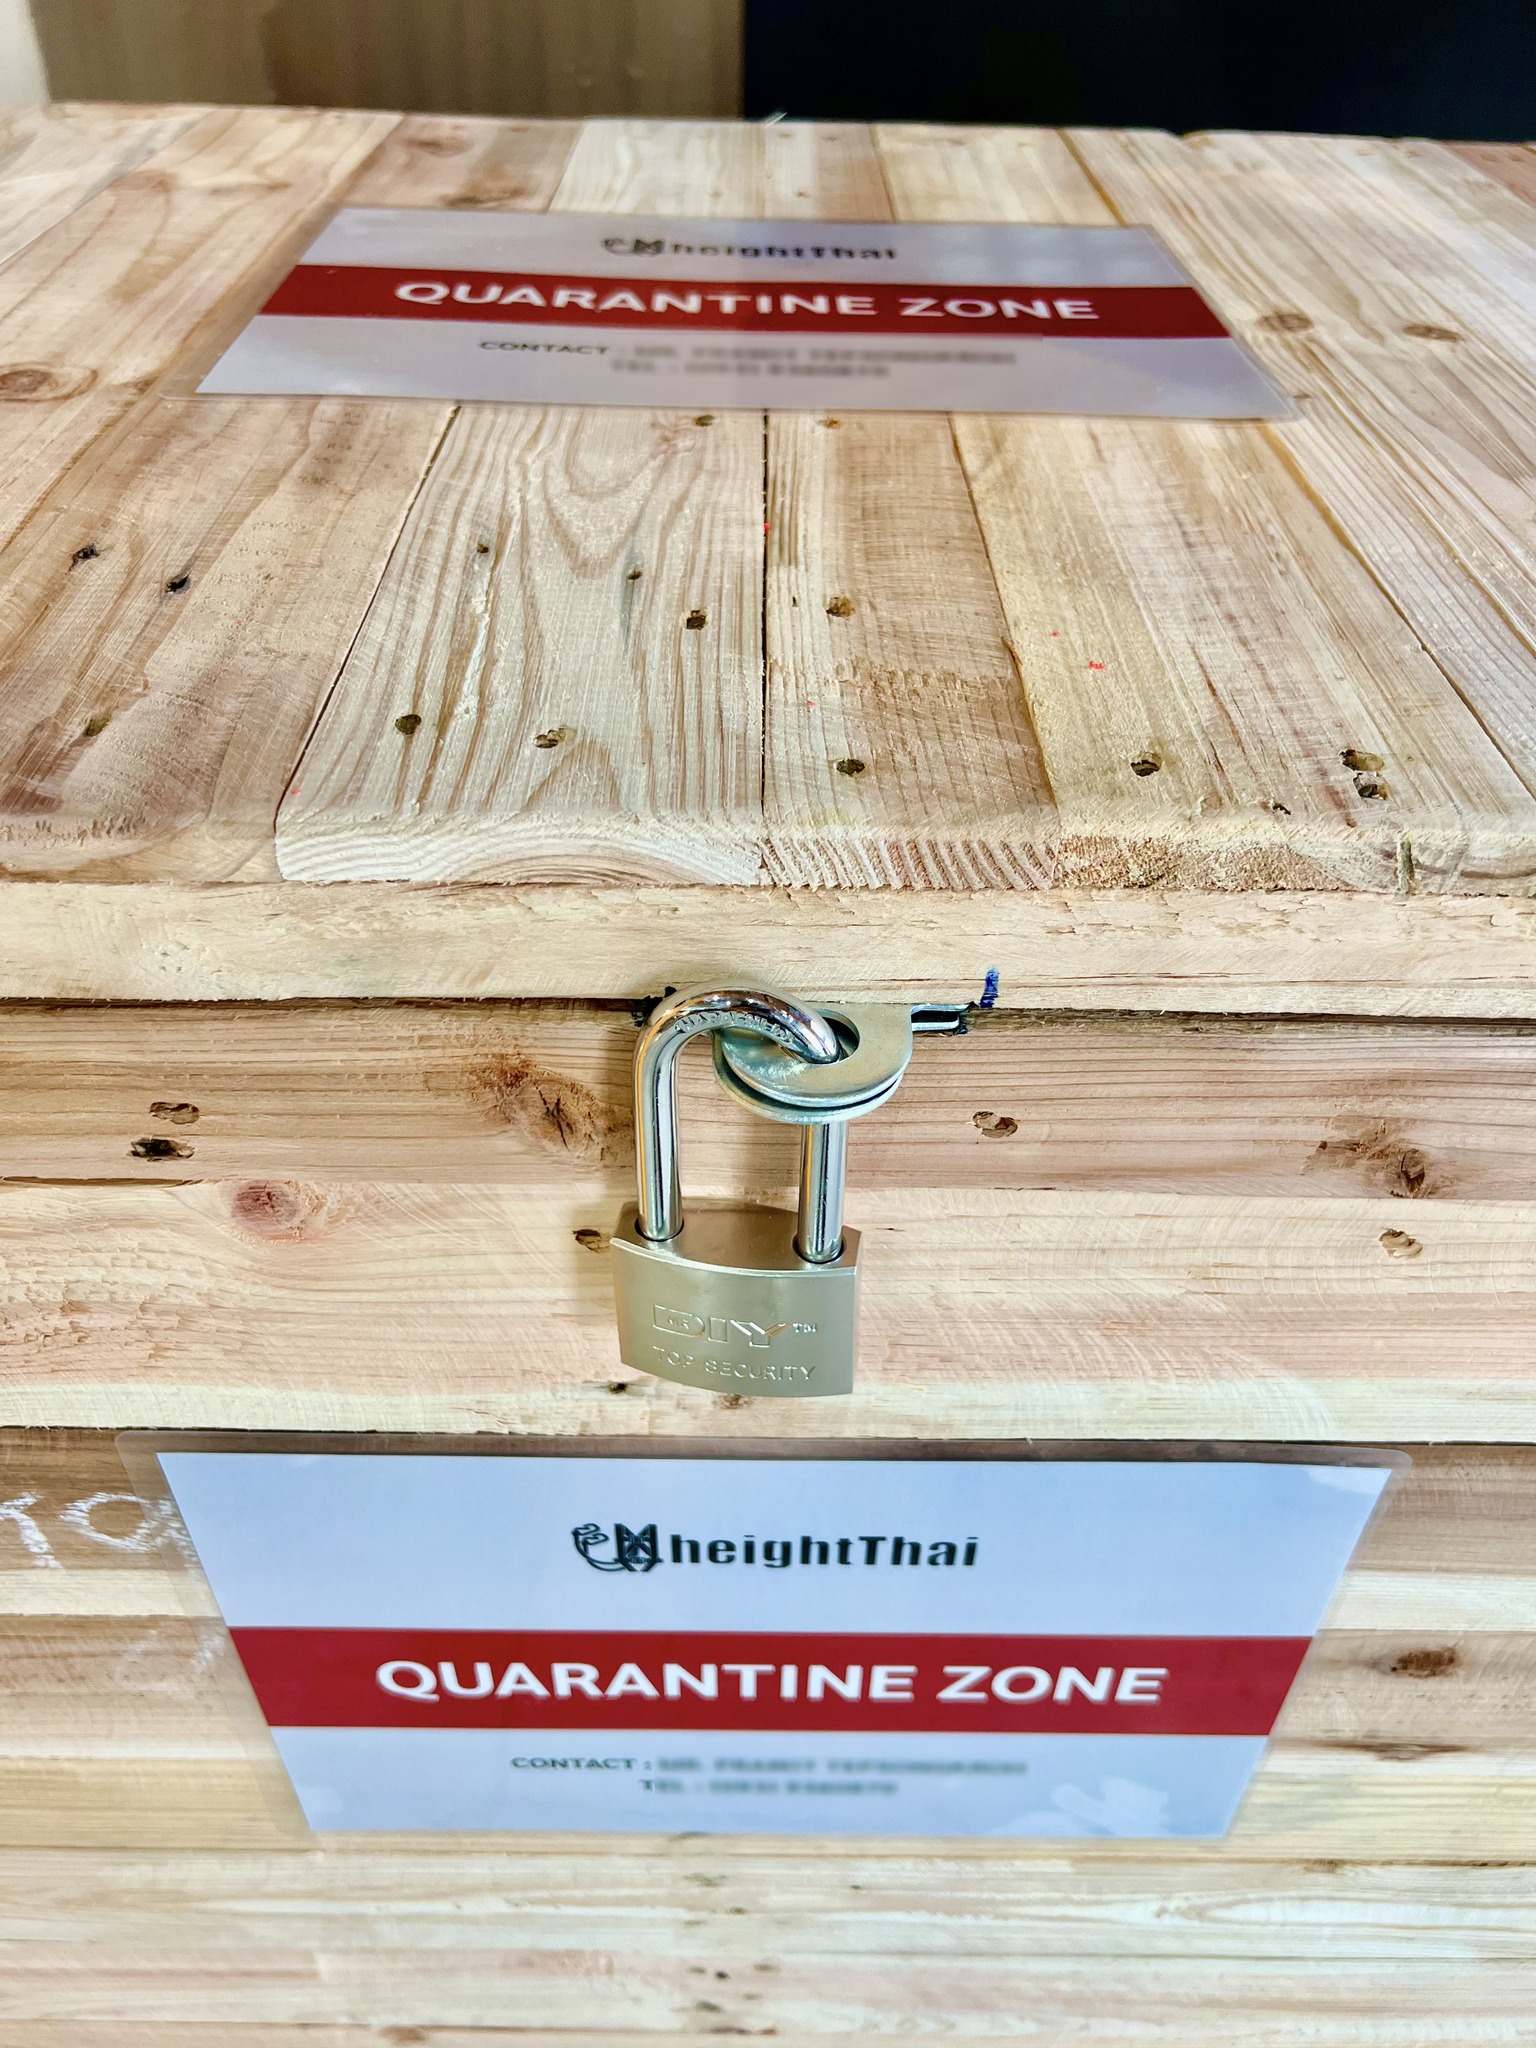 Quarantine zone equipment